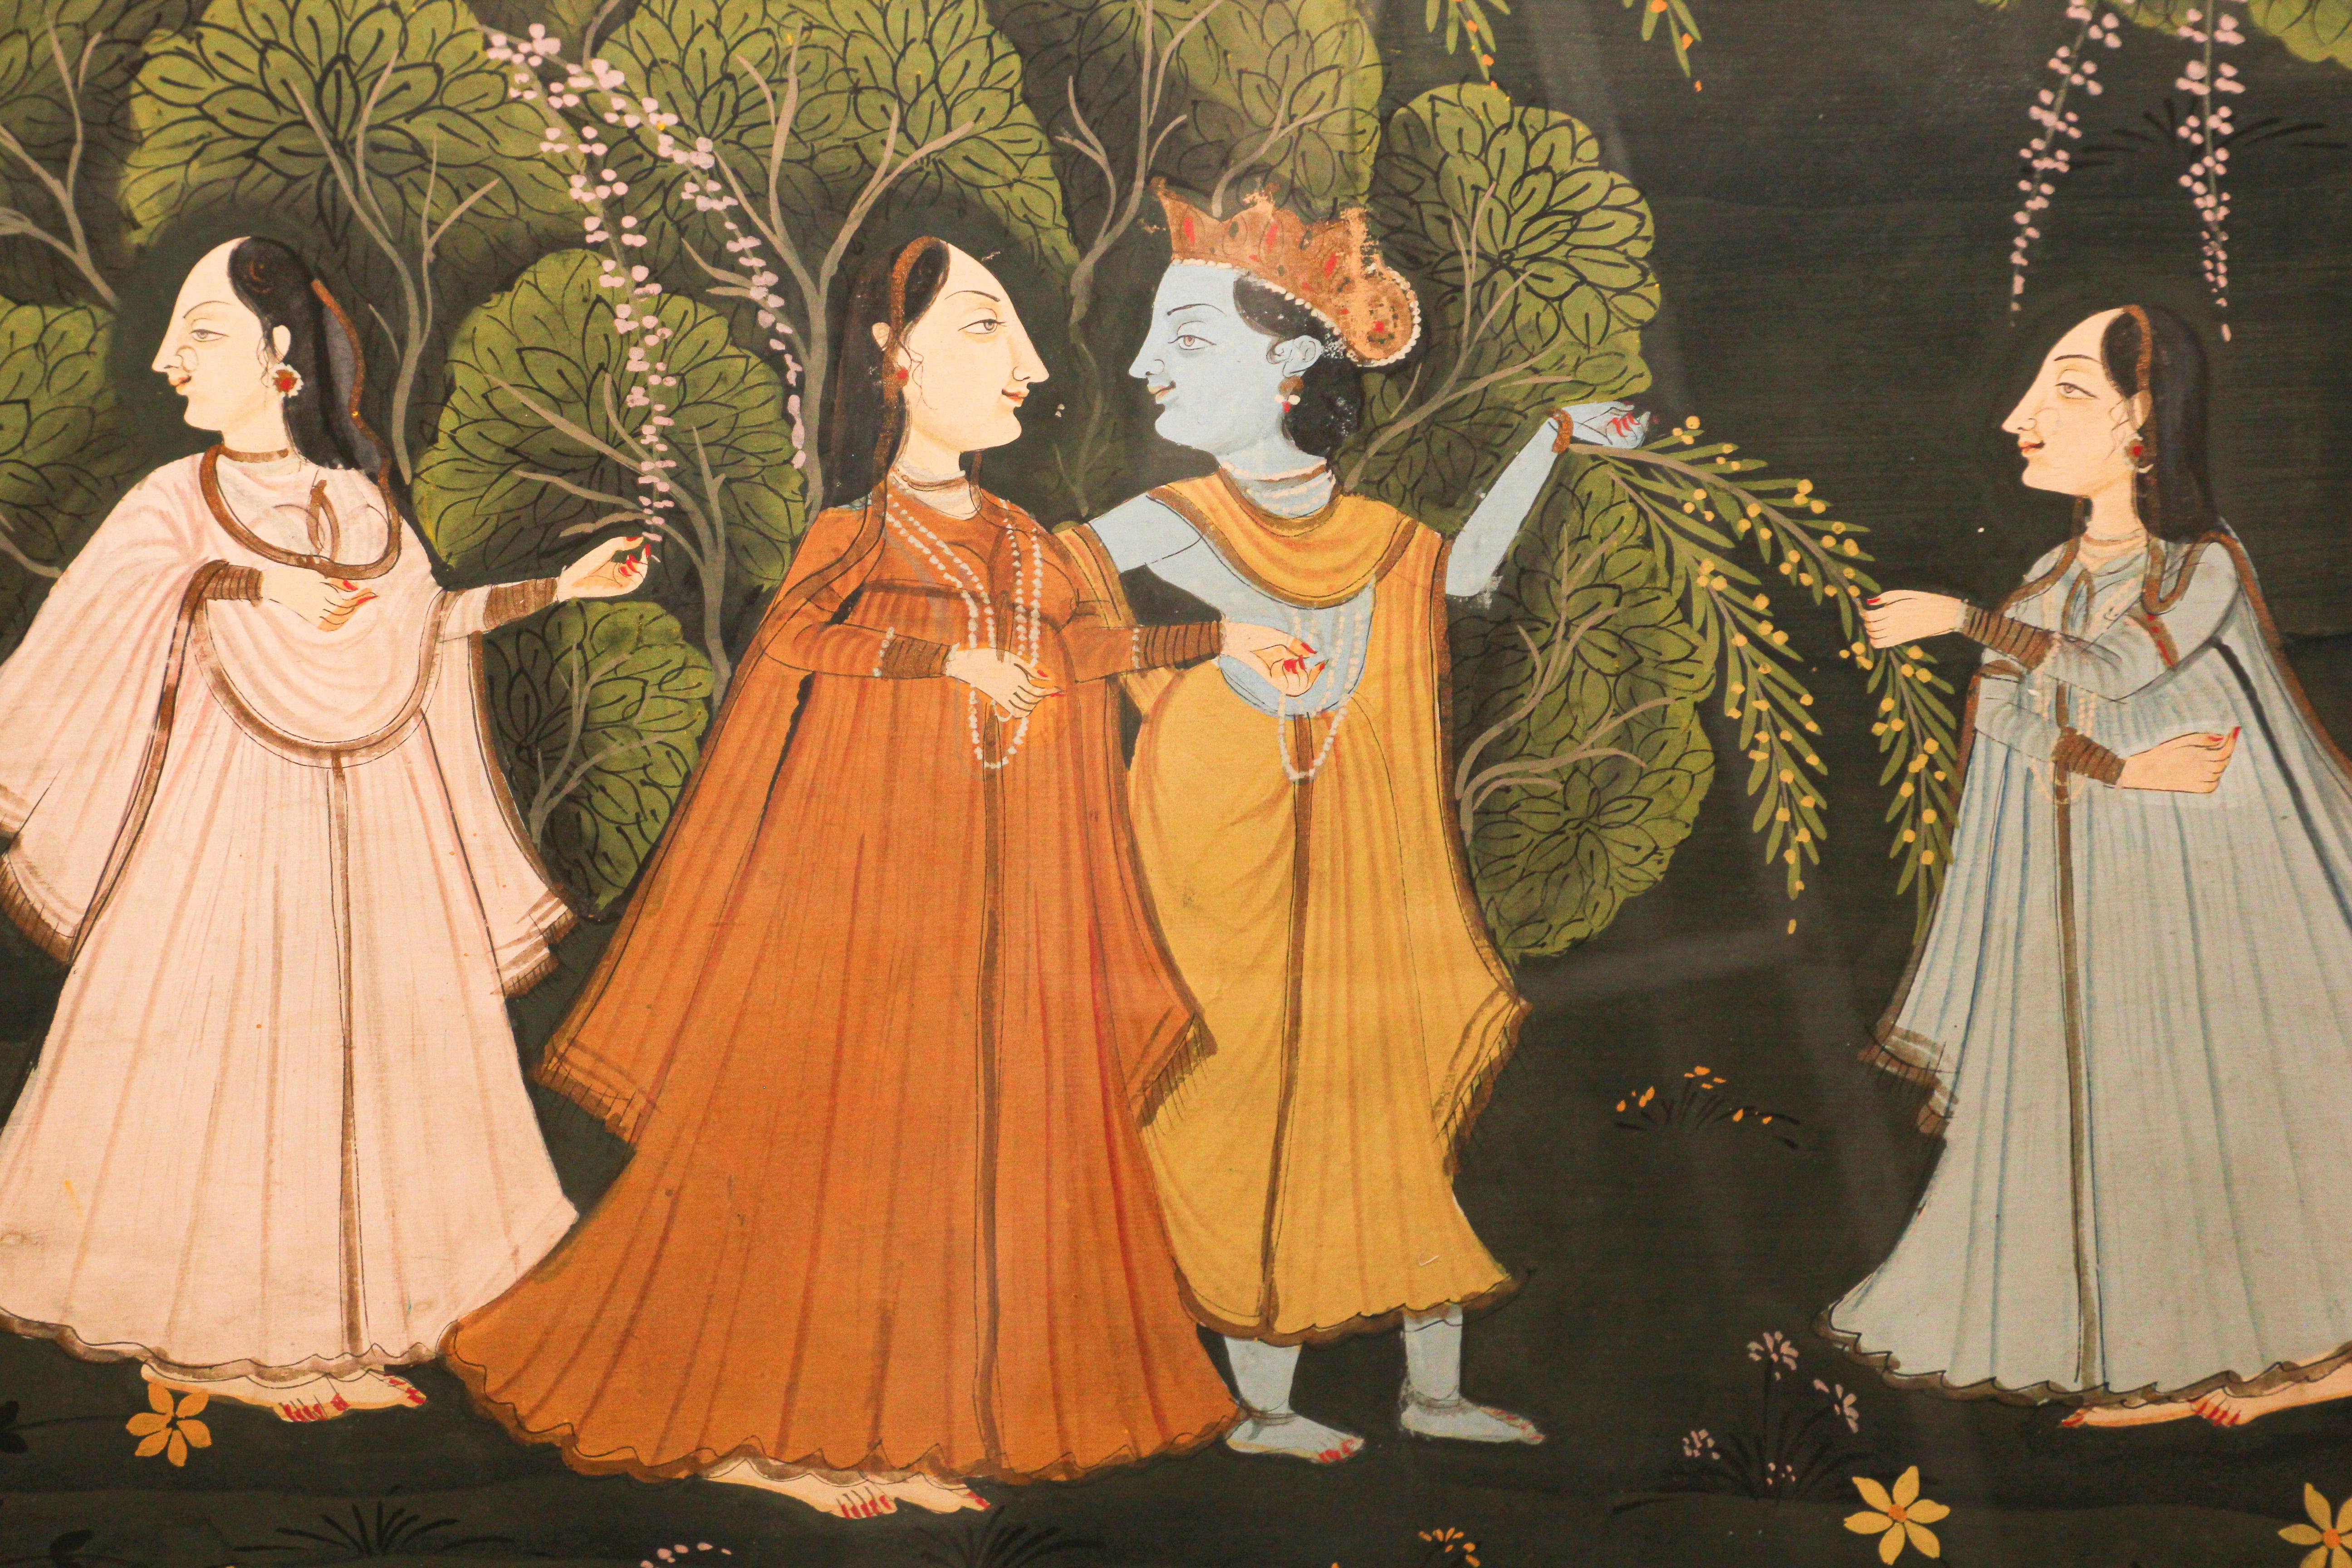 Grande peinture hindoue Pichhavai représentant Radha et Krishna avec des femmes Gopis. 
Pichhwai Peinture hindoue de Krishna et Radha encadrée sous verre.
Krishna marchant avec Radha et les Gopis, la composition est enfermée dans une forêt